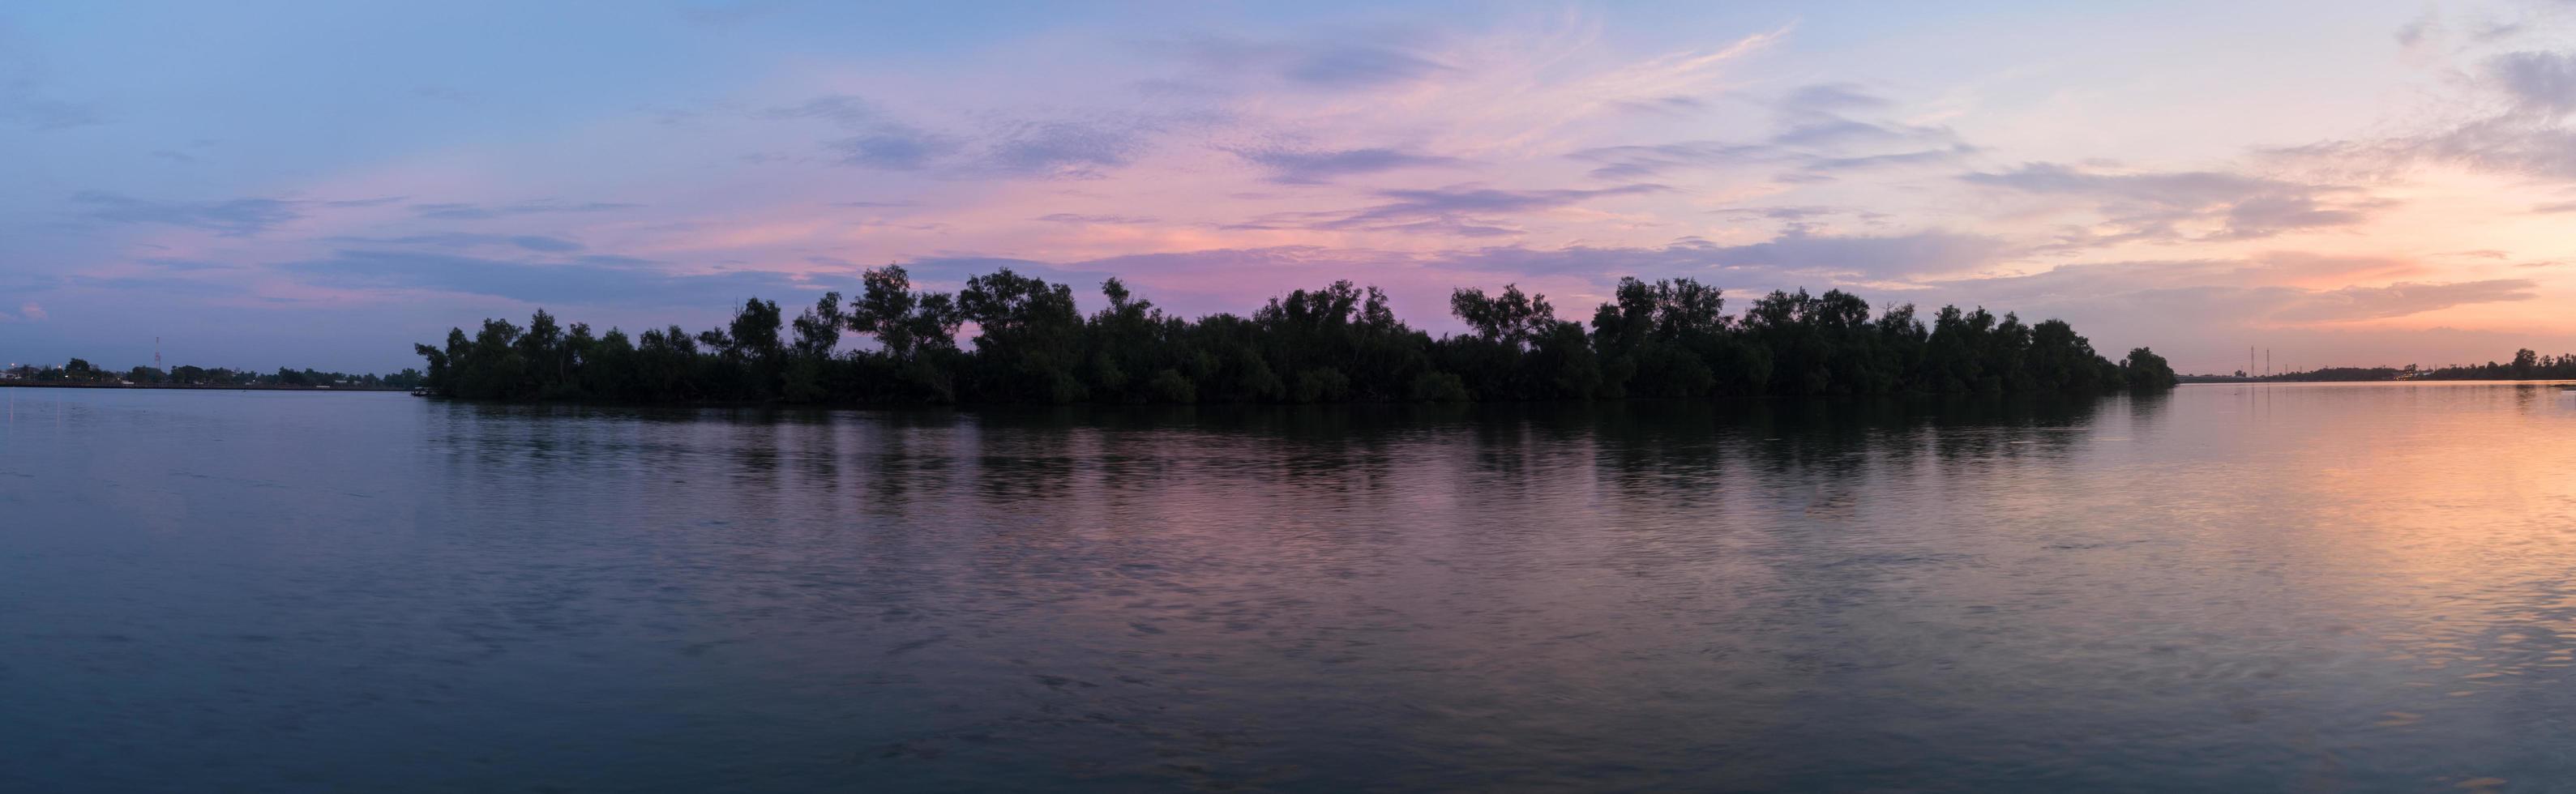 solnedgång vid floden foto